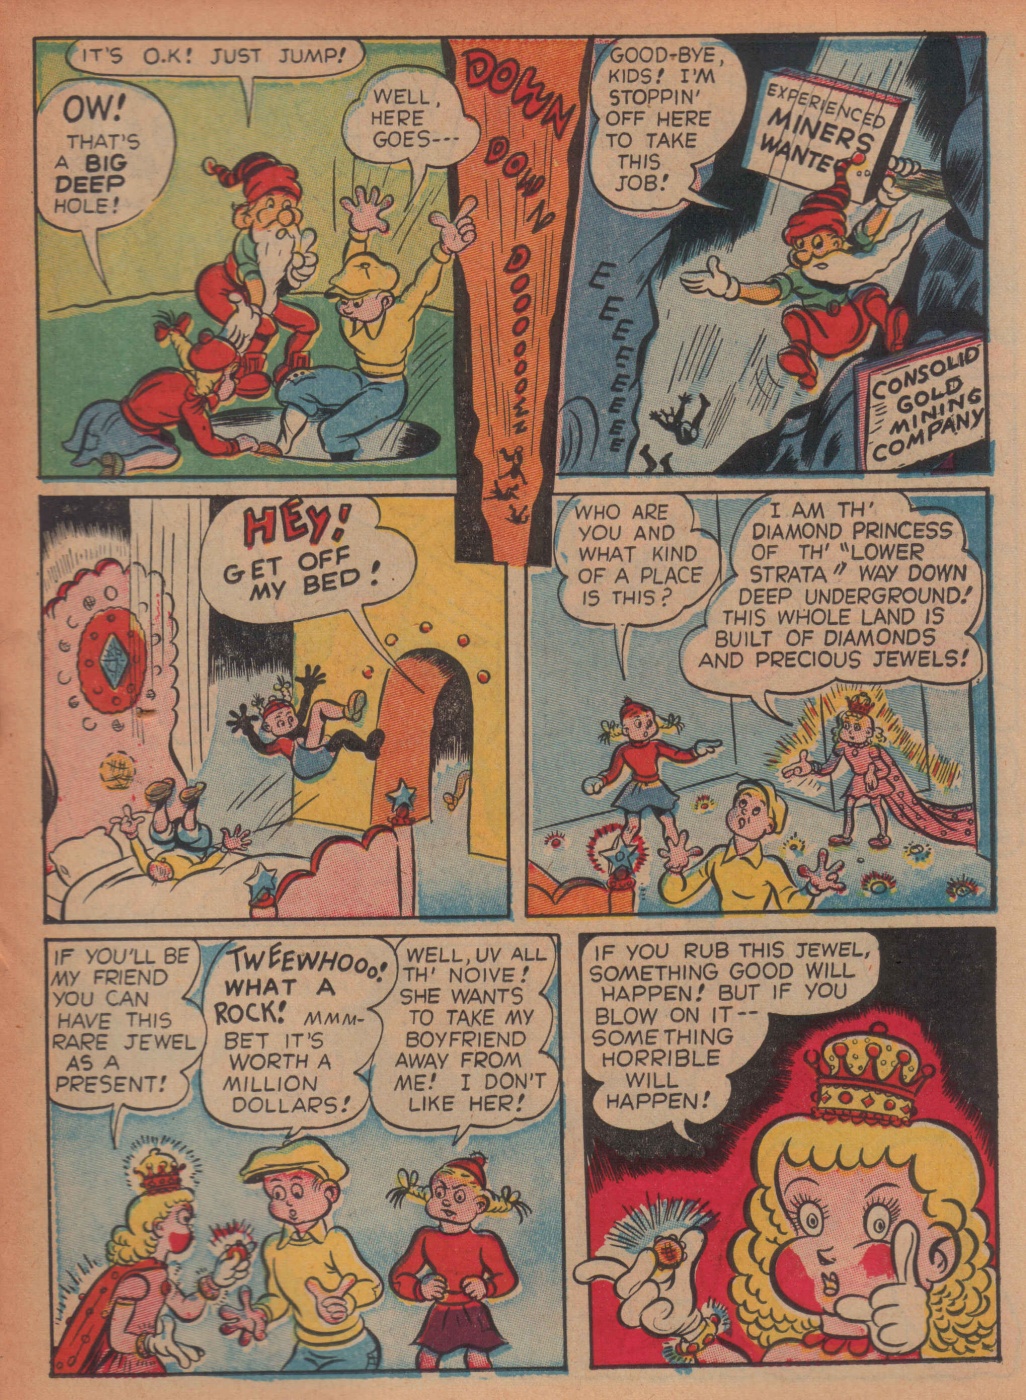 Super Dooper Funny Comics (27)